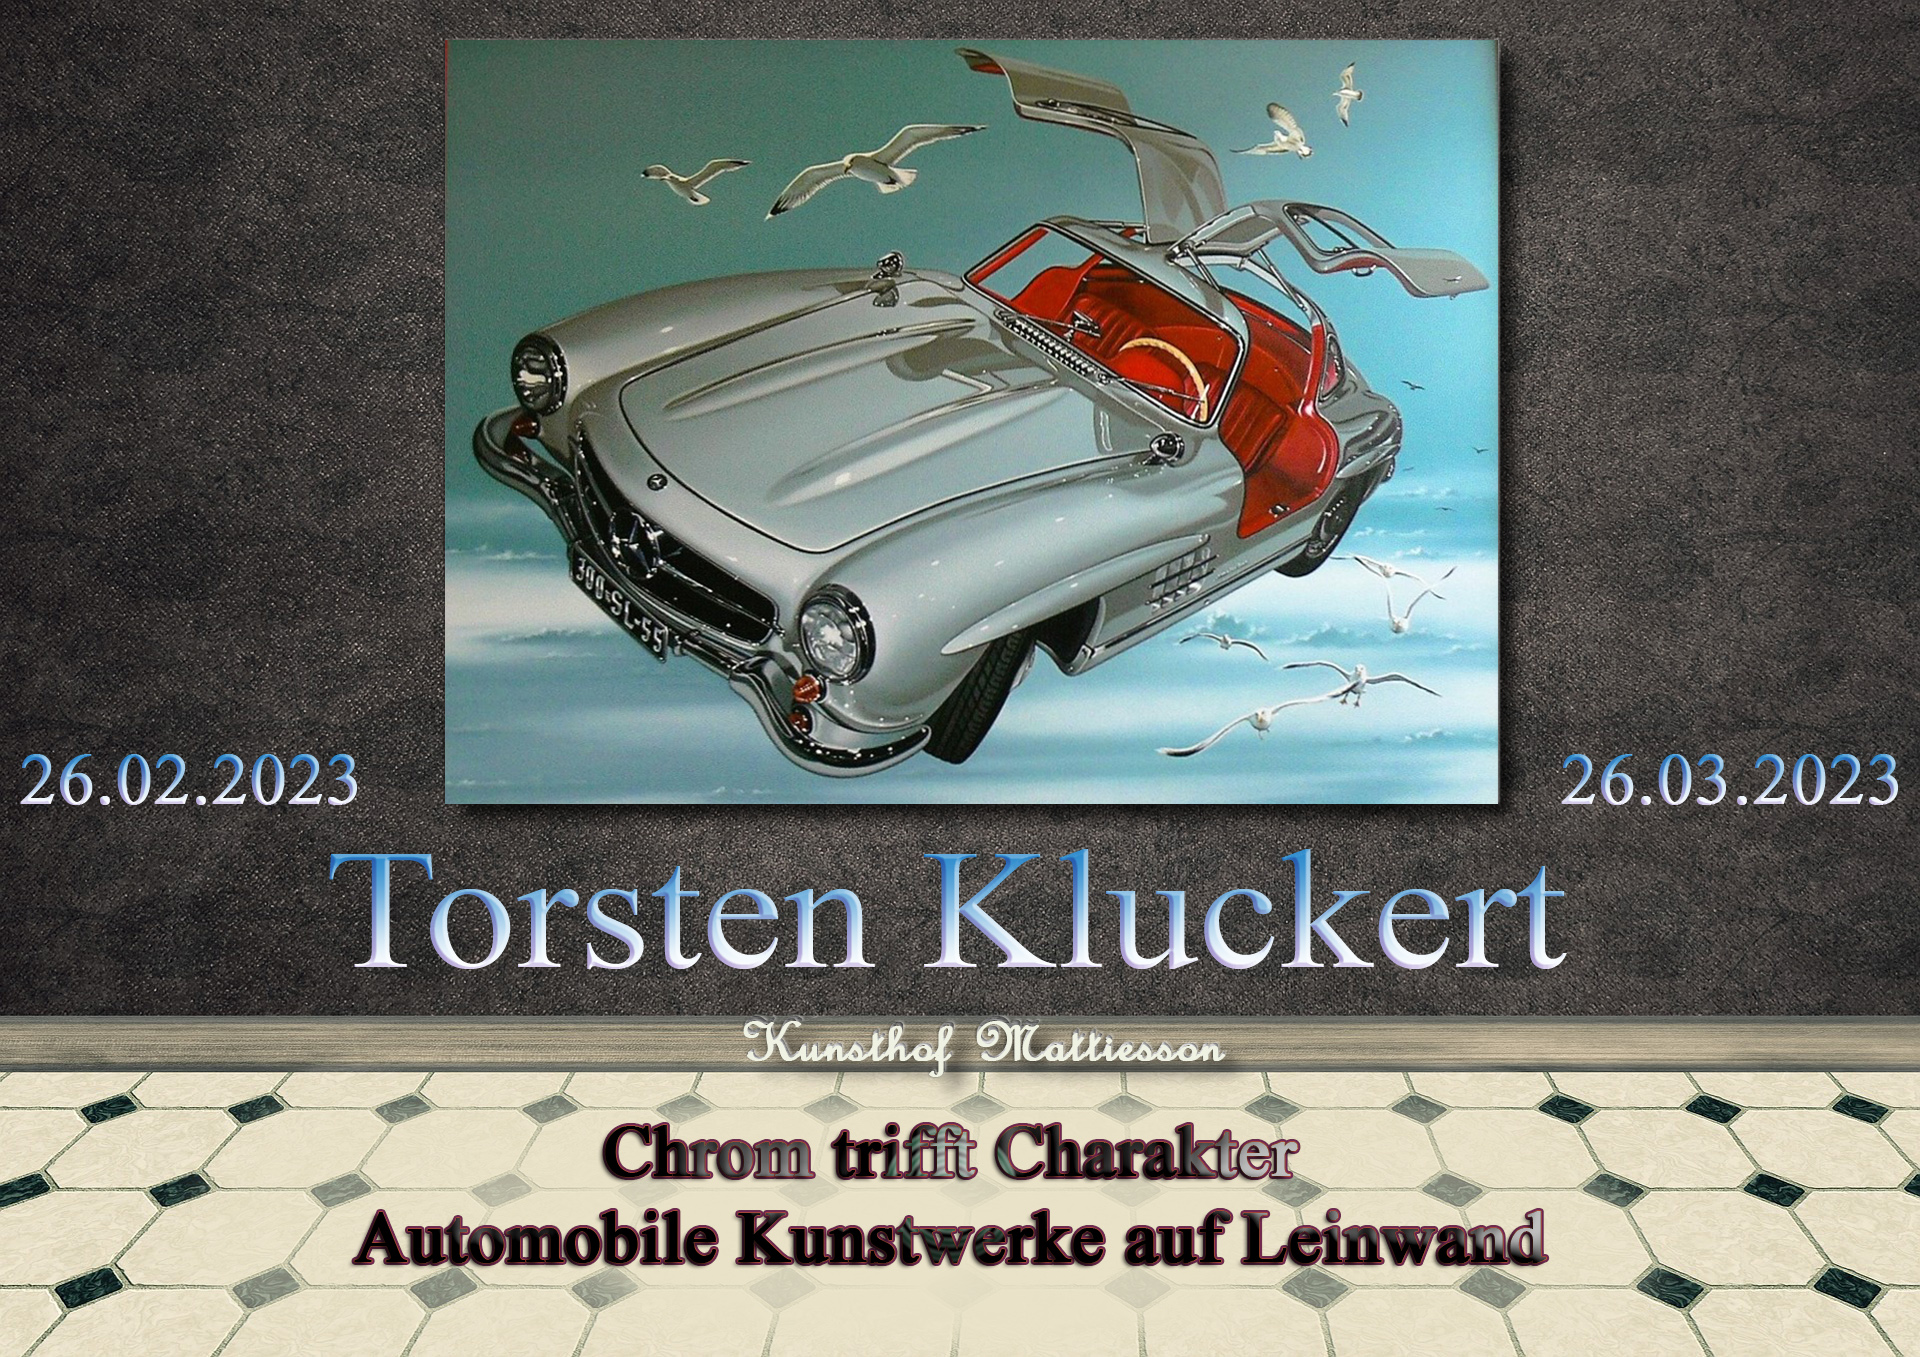 Auf dem Bild sehen sie das Ankündigung zur Ausstellung "Chrom trifft auf Charakter Automobile Kunstwerke auf Leinwand".